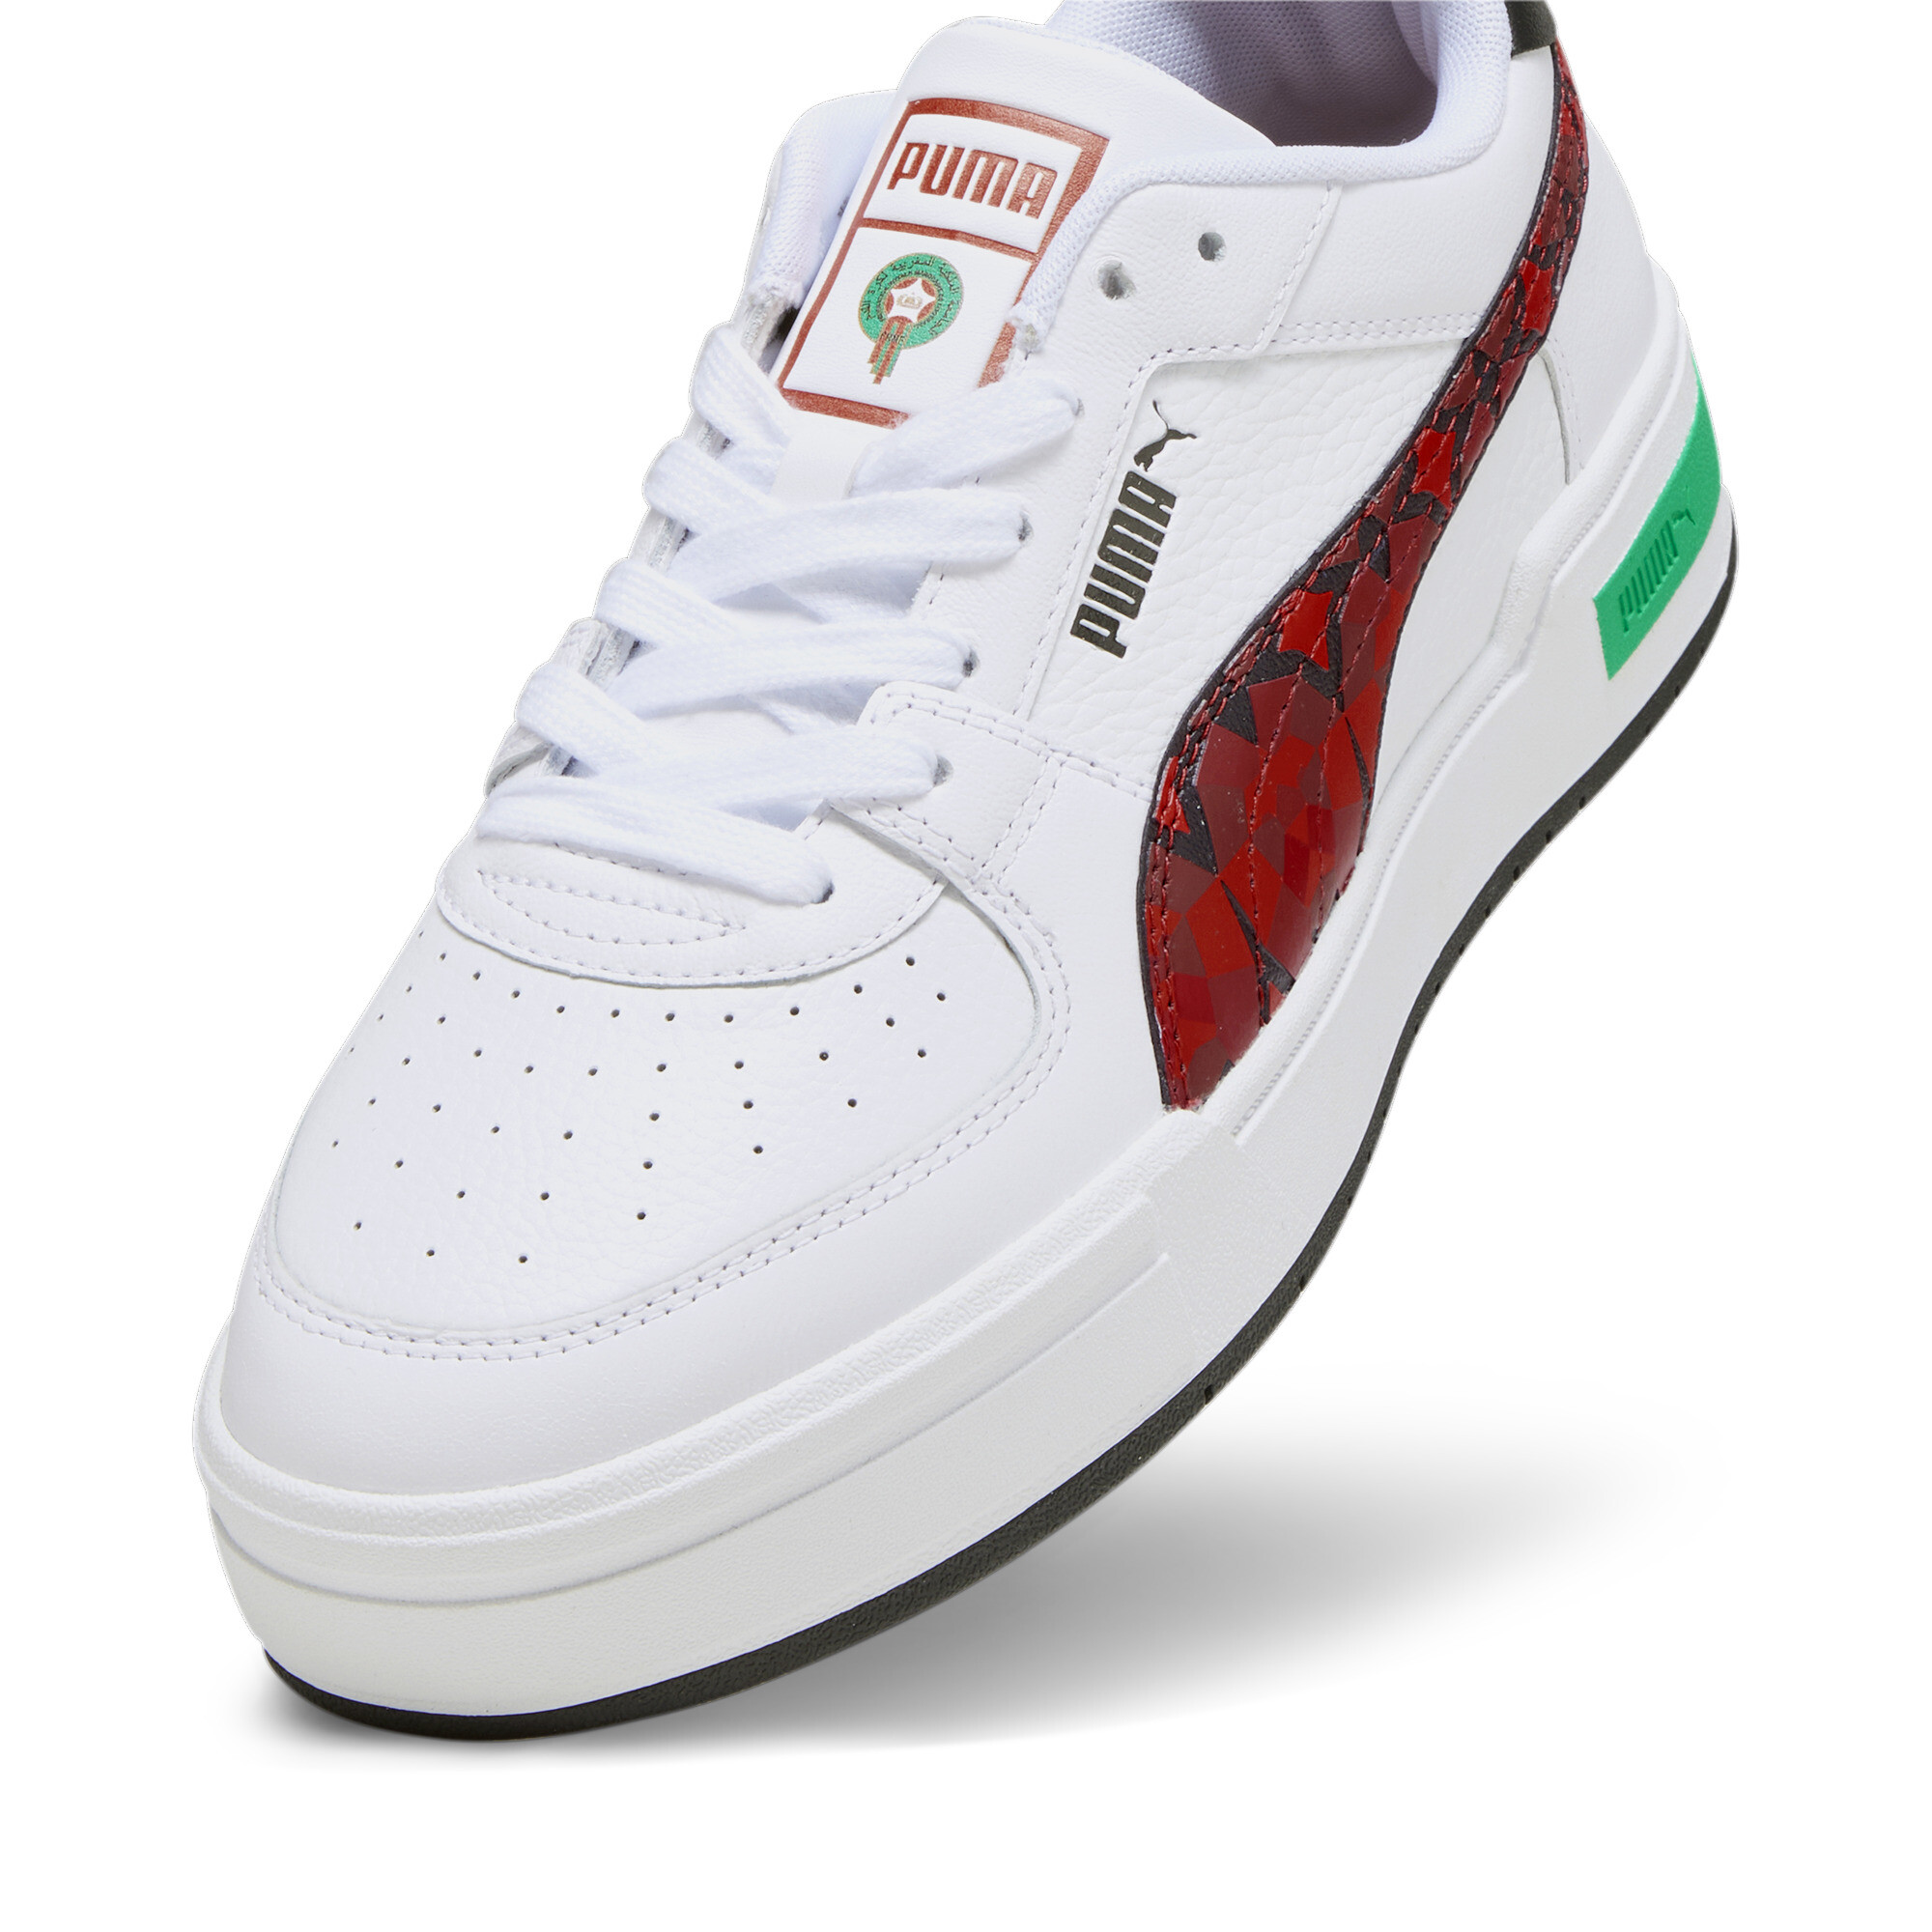 Men's PUMA CA Pro Morocco Football Sneakers In White, Size EU 41